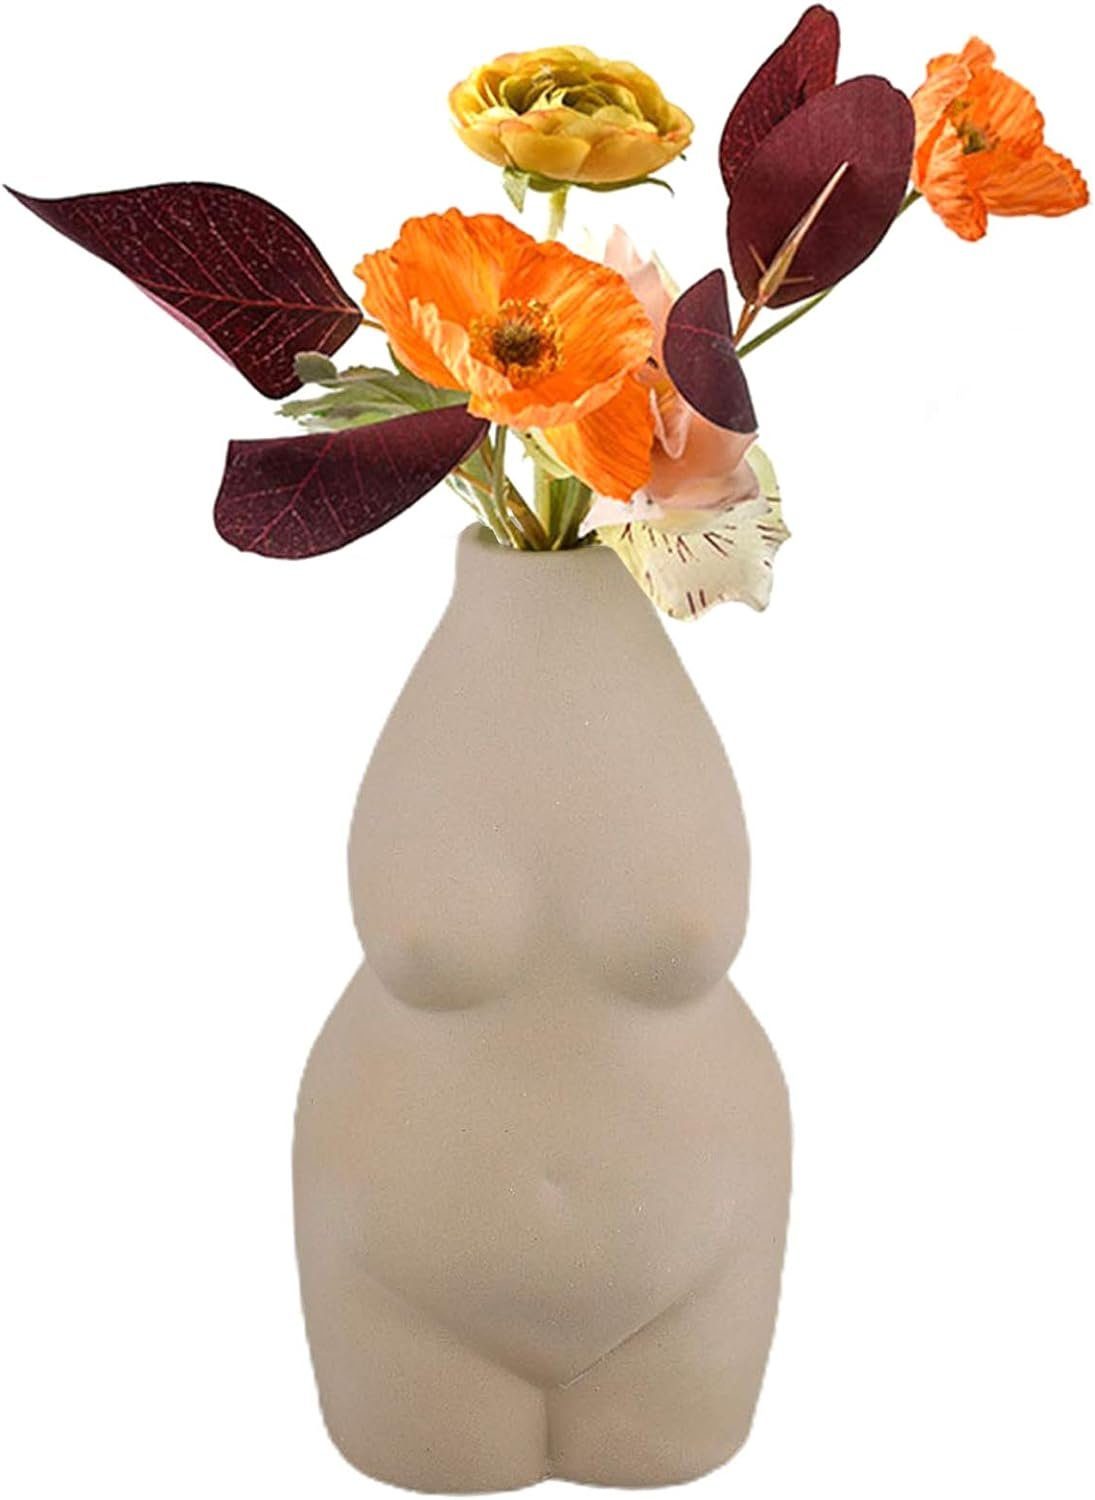 Kunst Körper Deko Design,Keramik Weiblich Vase Grau Blumentopf Dekovase Jormftte Statue,für